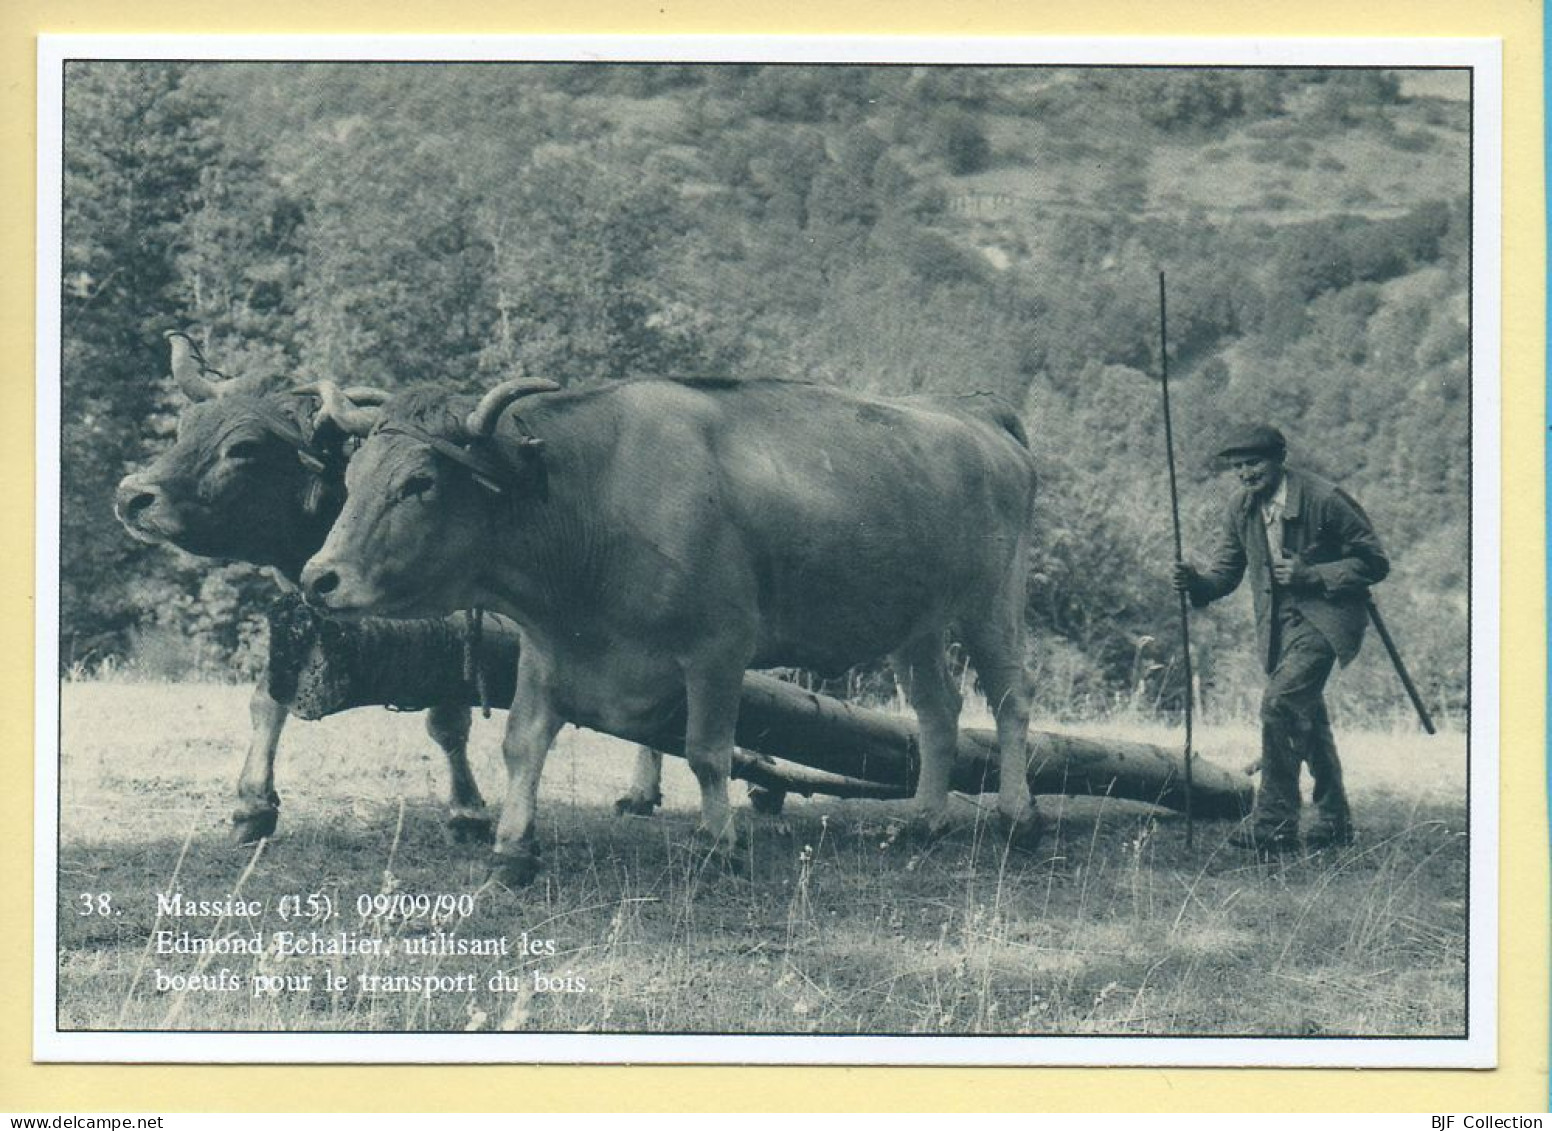 Edmond ECHALIER Utilisant Les Bœufs Pour Le Transport Du Bois (15) Massiac (Philippe CHMIELEWSKI) N° 38 – 750 Ex - Landbouwers